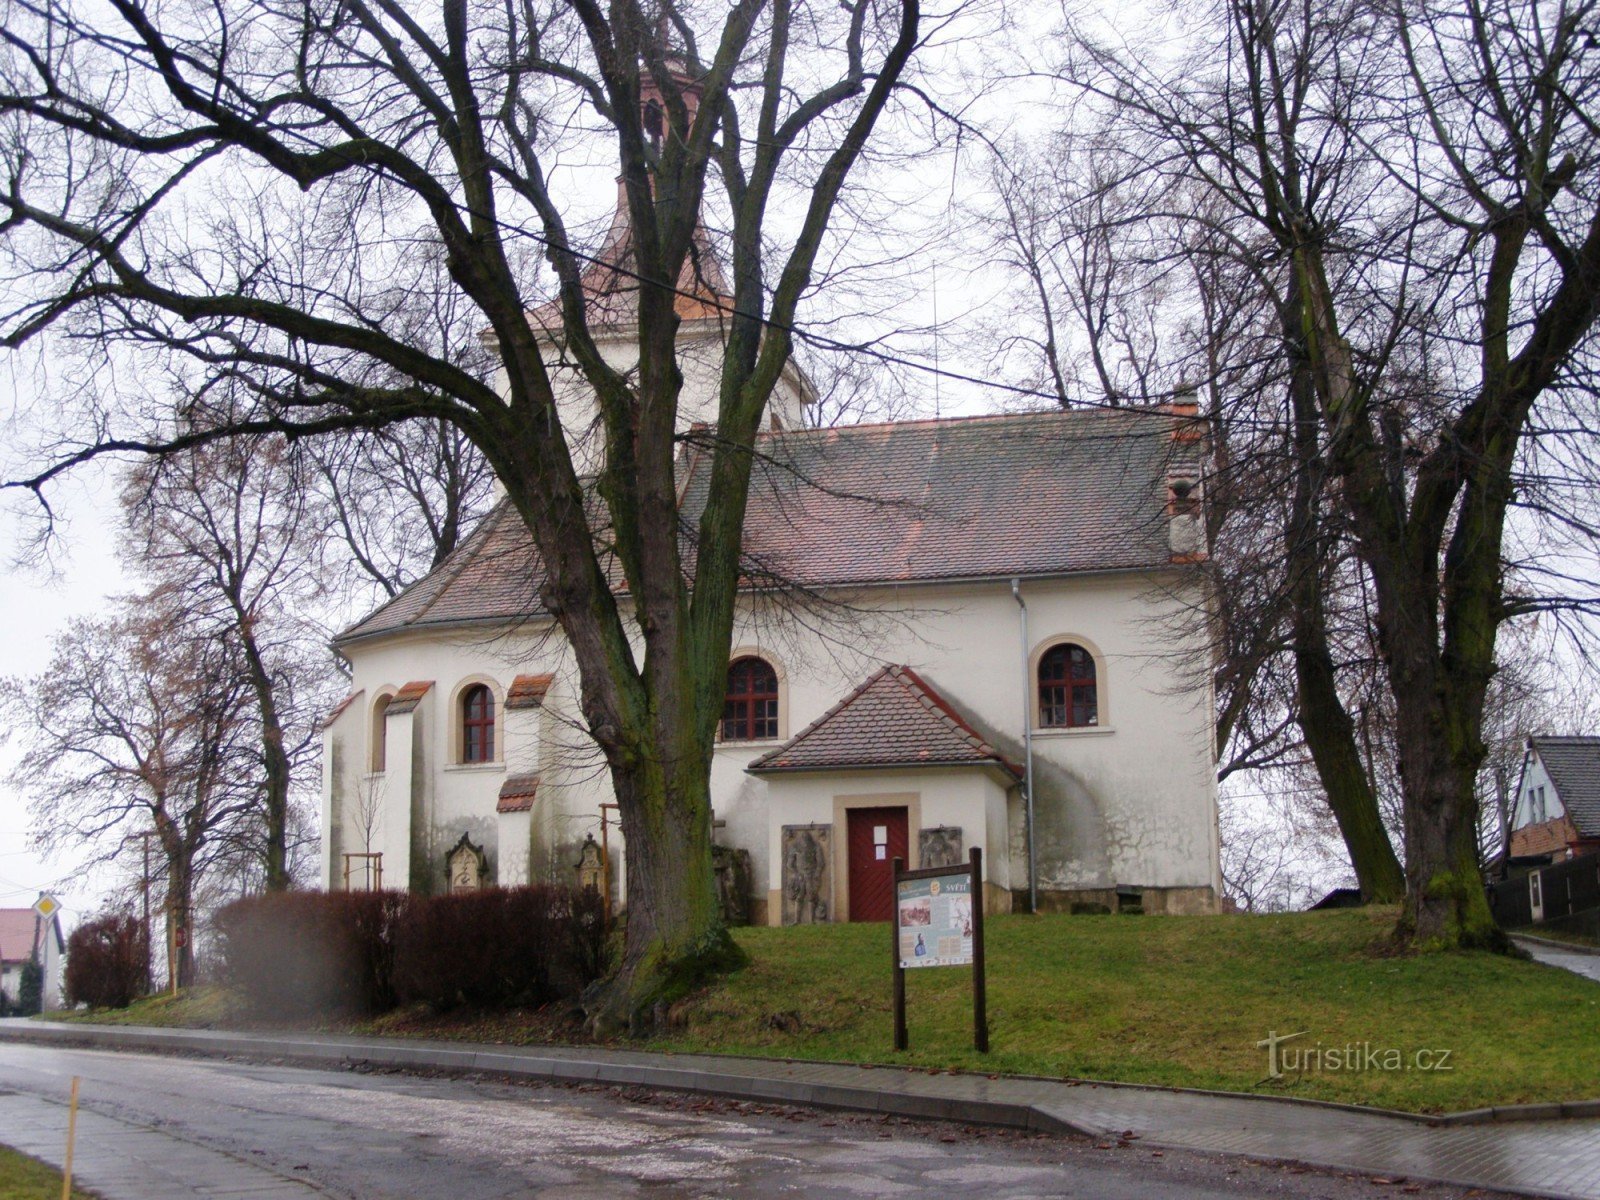 Helig - kyrka